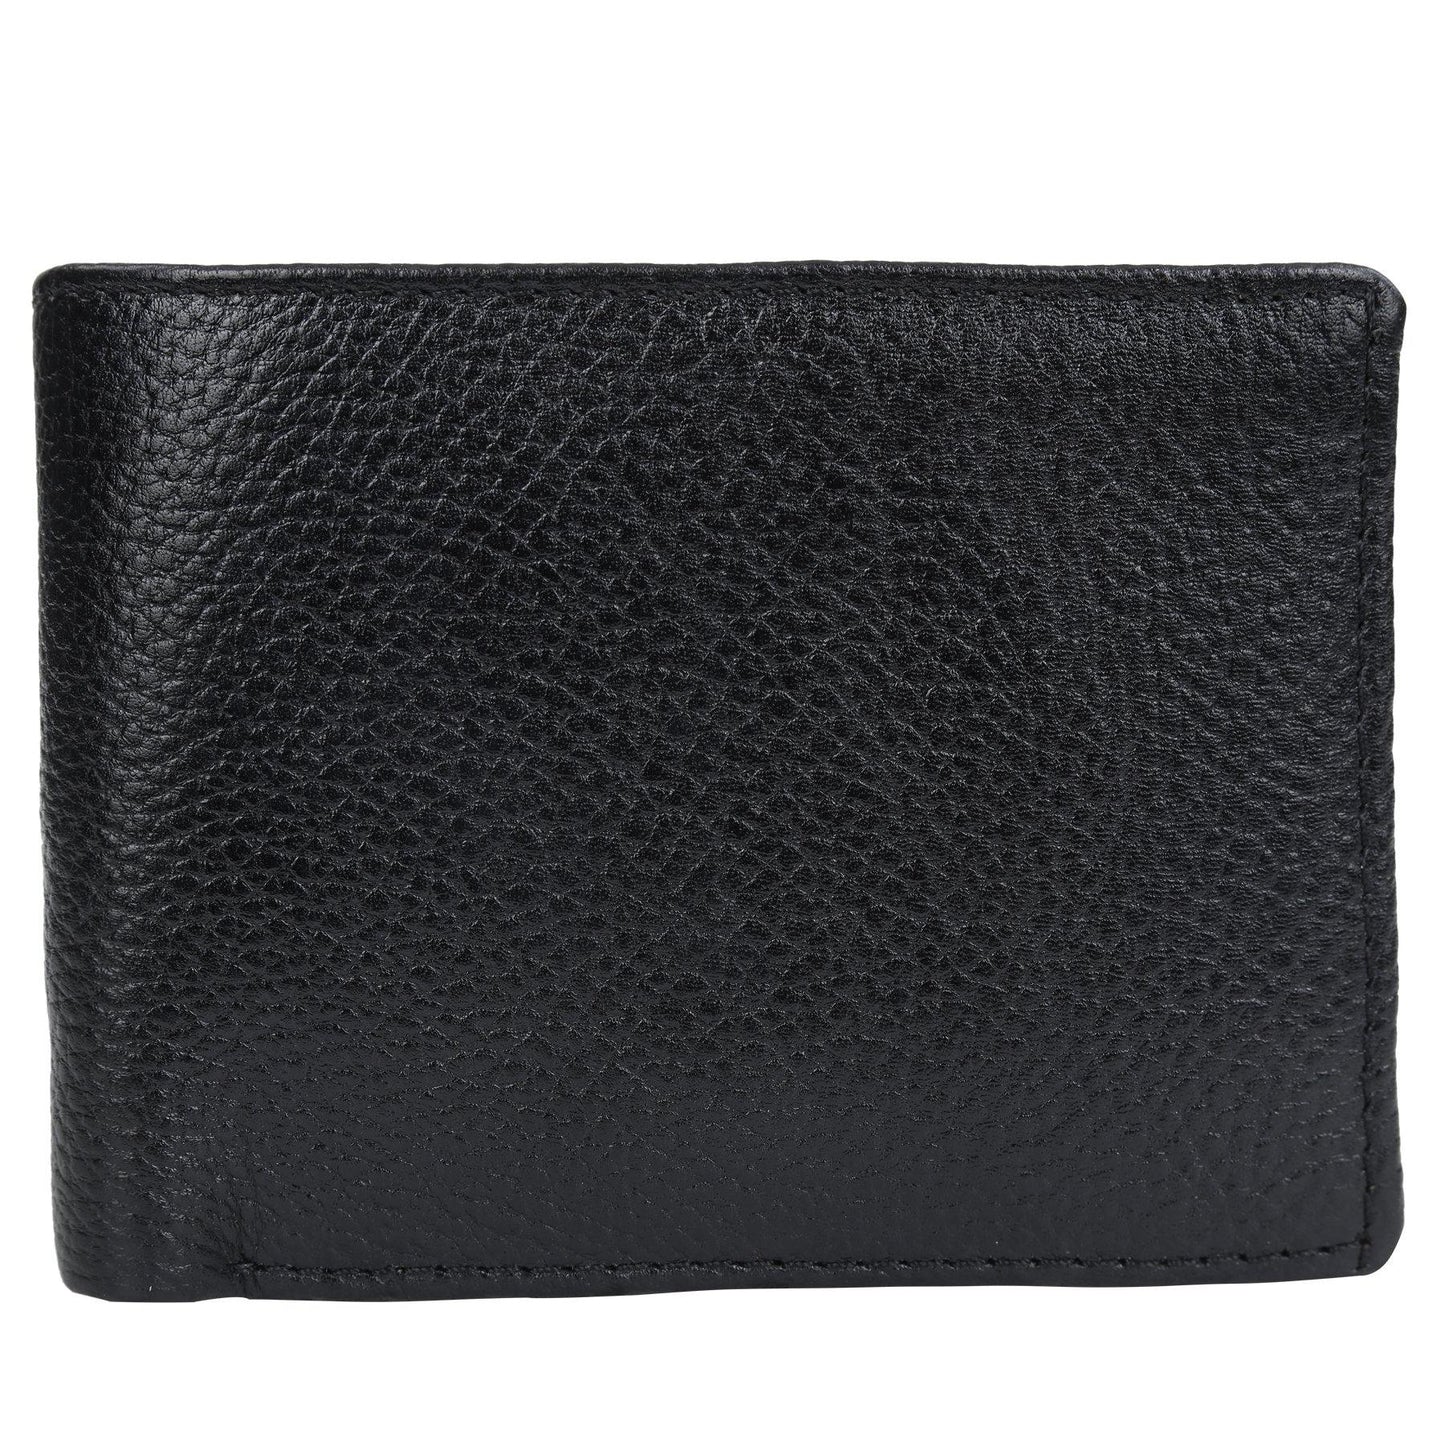 Trendy wallet for Men - Leatherworldonline.net